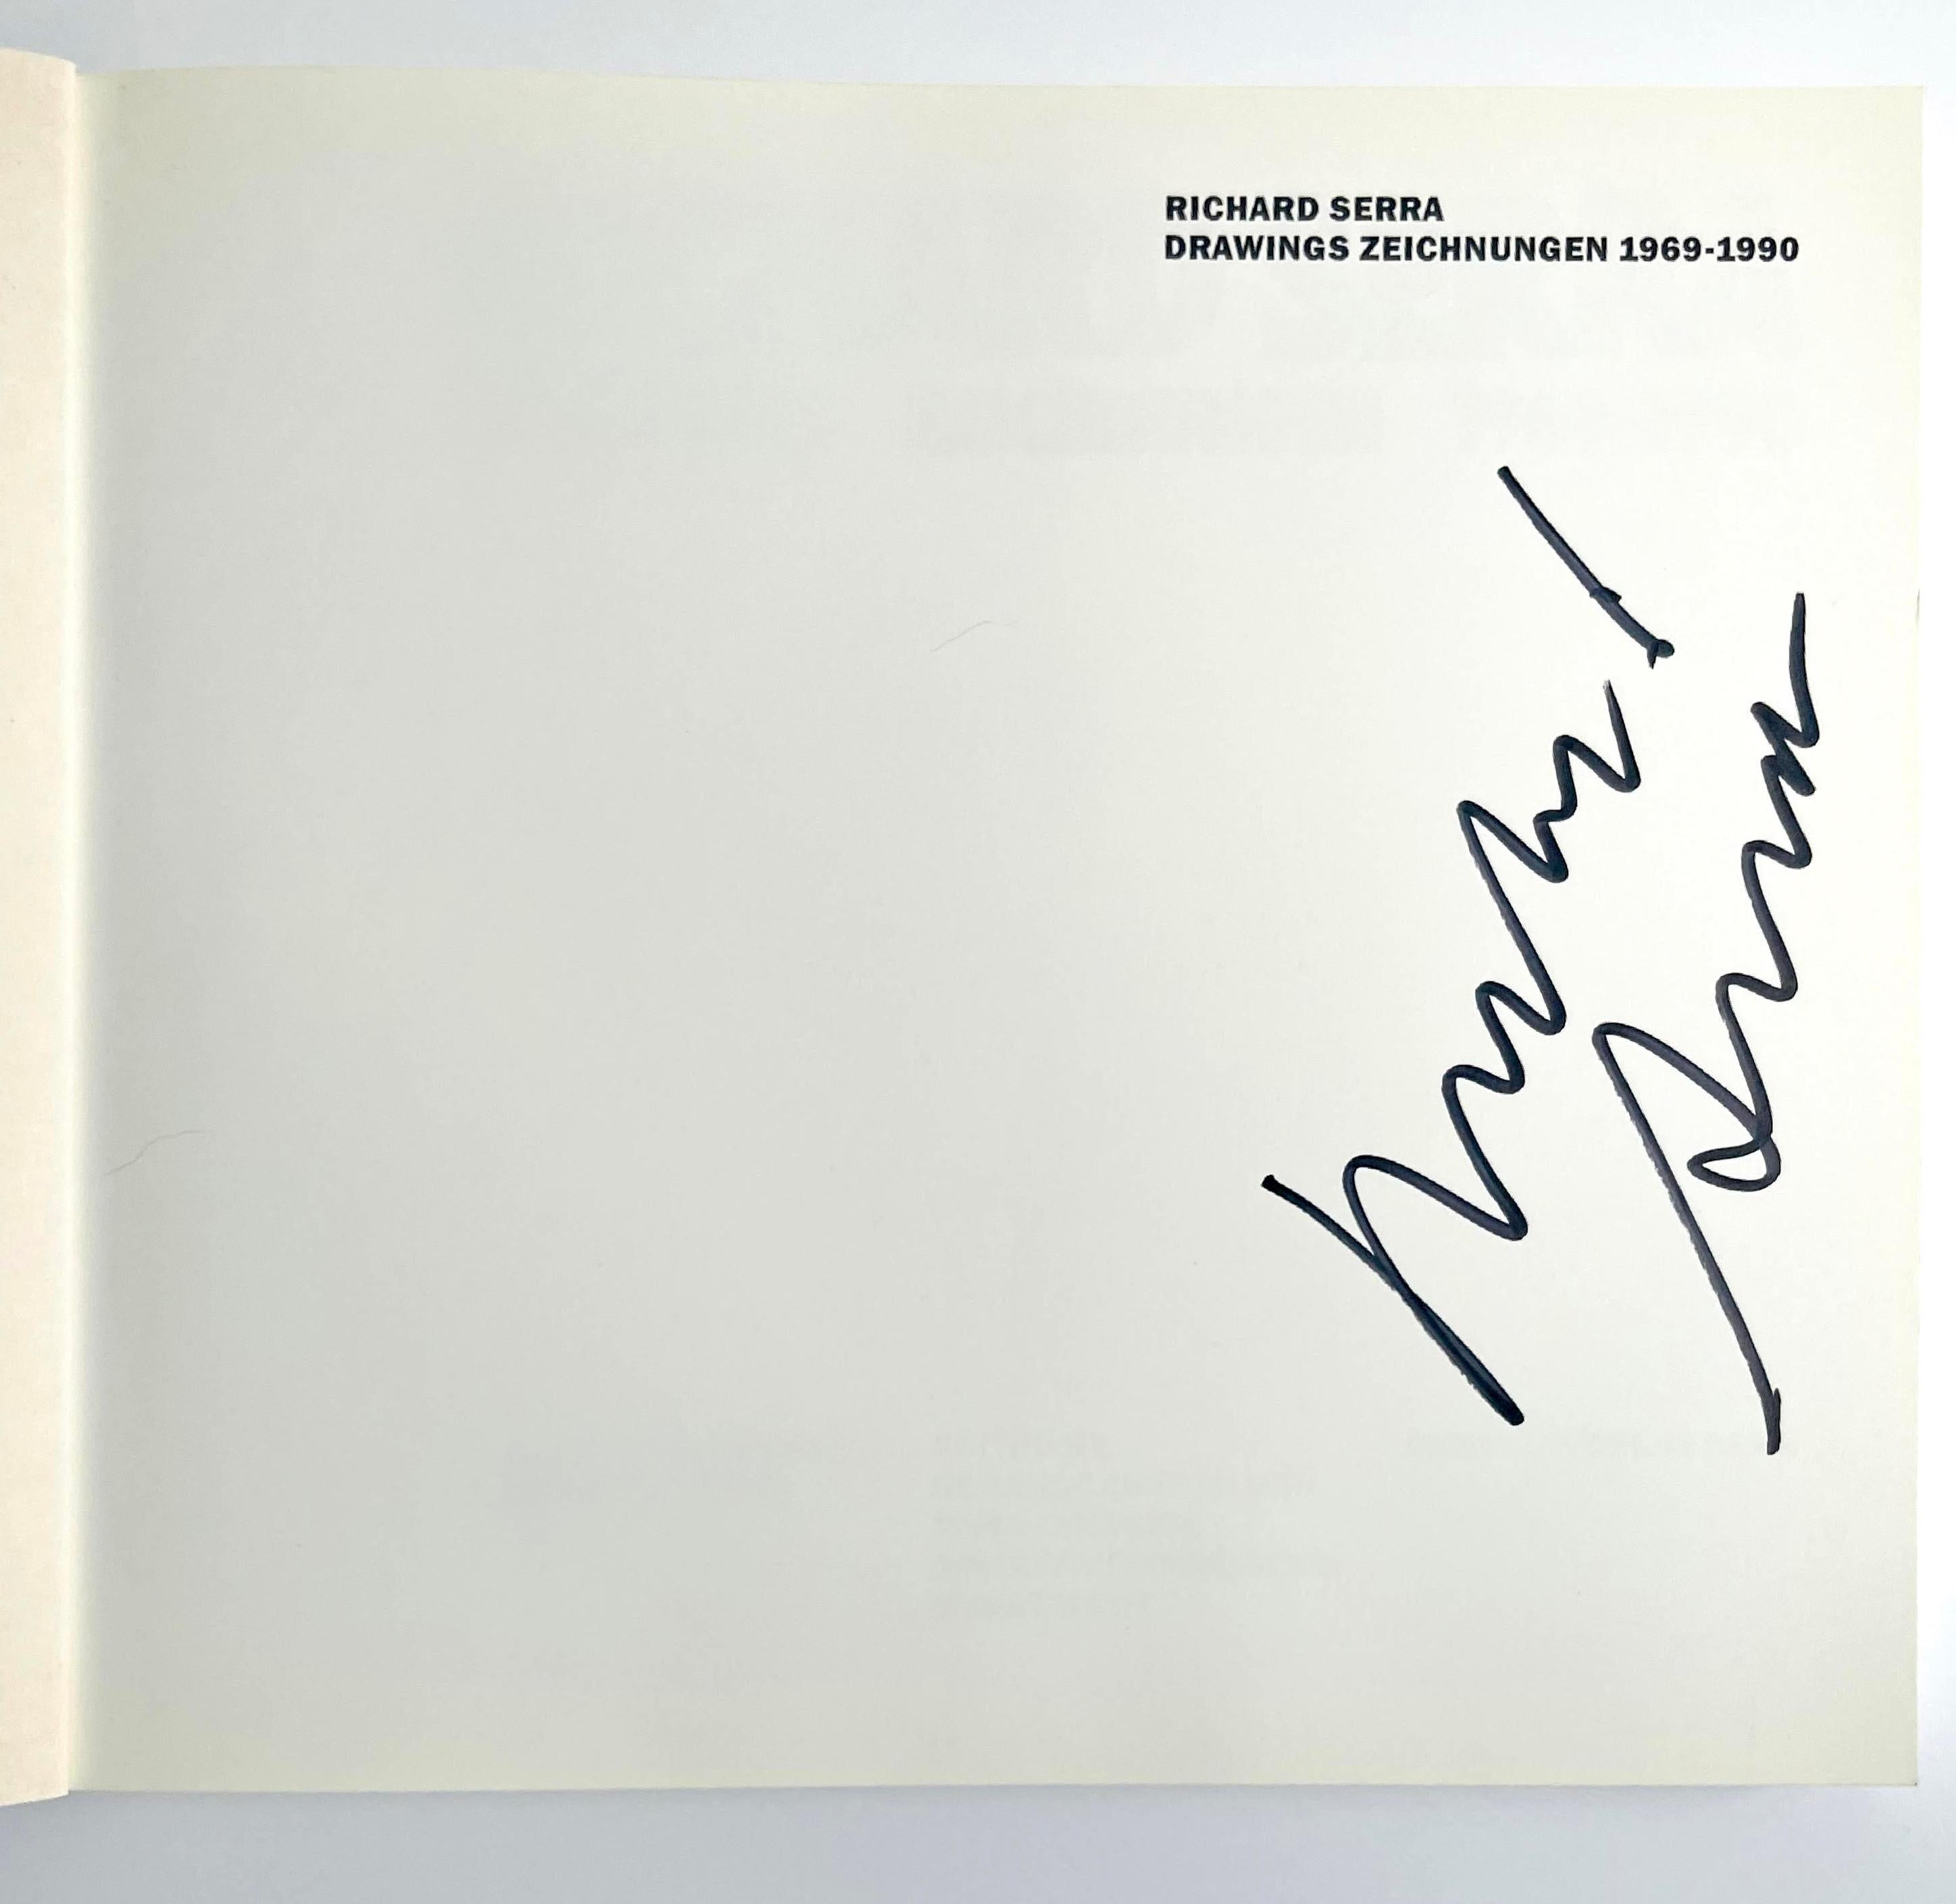 Richard Serra Zeichnungen 1969-1990 (Handsigniert von Richard Serra), 1990
Broschierte Monographie Buch (Handsigniert von Richard Serra)
Handsigniert von Richard Serra auf der halben Titelseite
9 3/4 × 11 × 1 Zoll
Dieses Softcover-Buch ohne